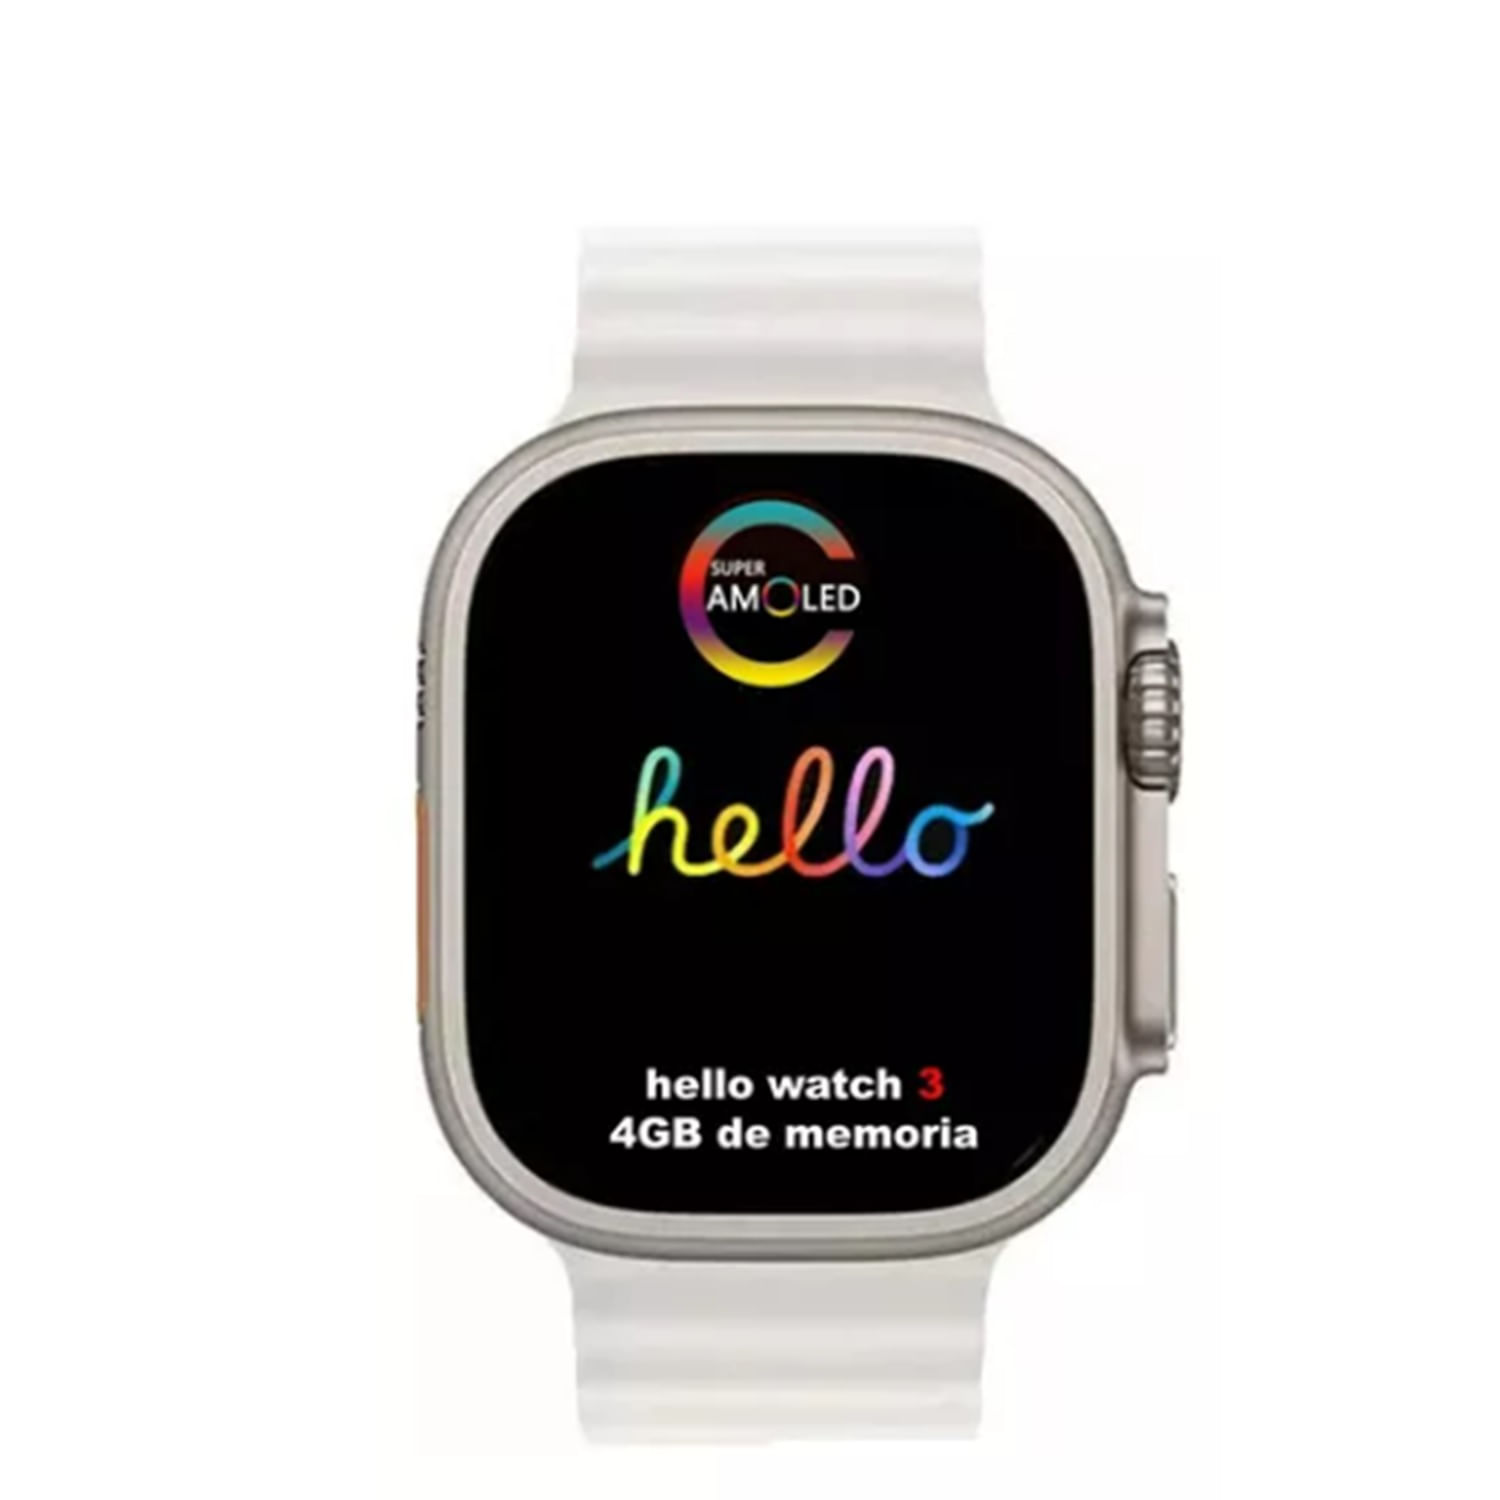 Smartwatch Hello Watch 3 Plus Ultra 4GB Color Beige I Oechsle - Oechsle